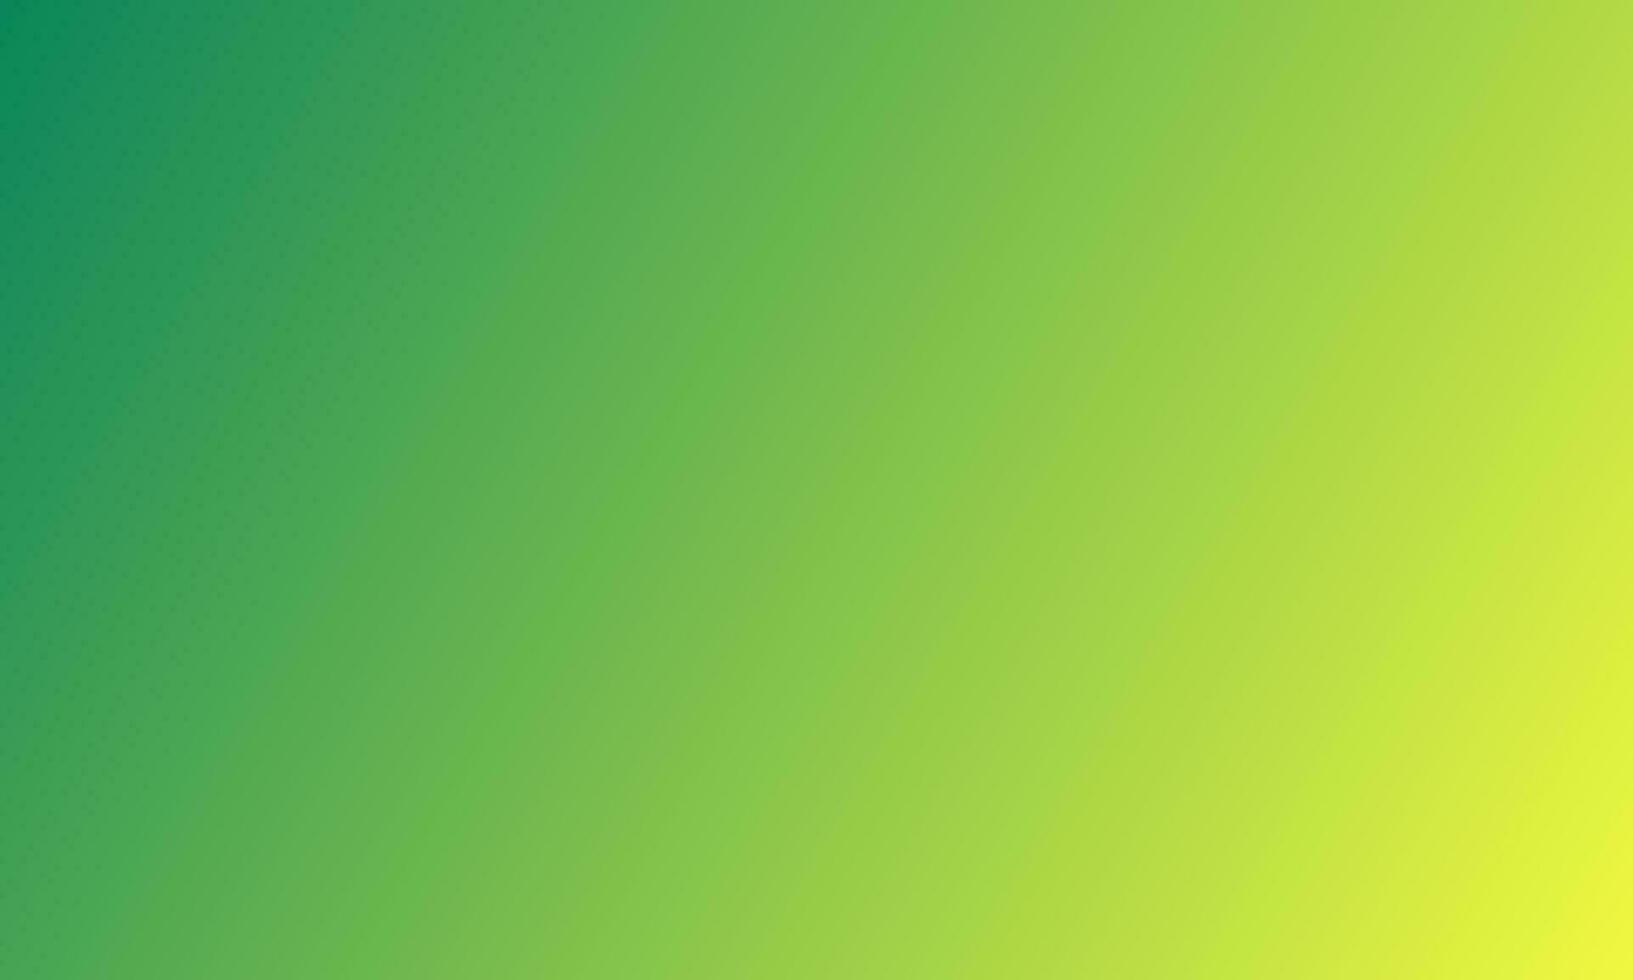 abstrakt verschwommen stark Gelb, Limette Grün Farben Mischung. Gradient linear Hintergrund. nahtlos modern horizontal Design Grafik zum Handy, Mobiltelefon Anwendung, Banner, Poster, Landung Seite vektor